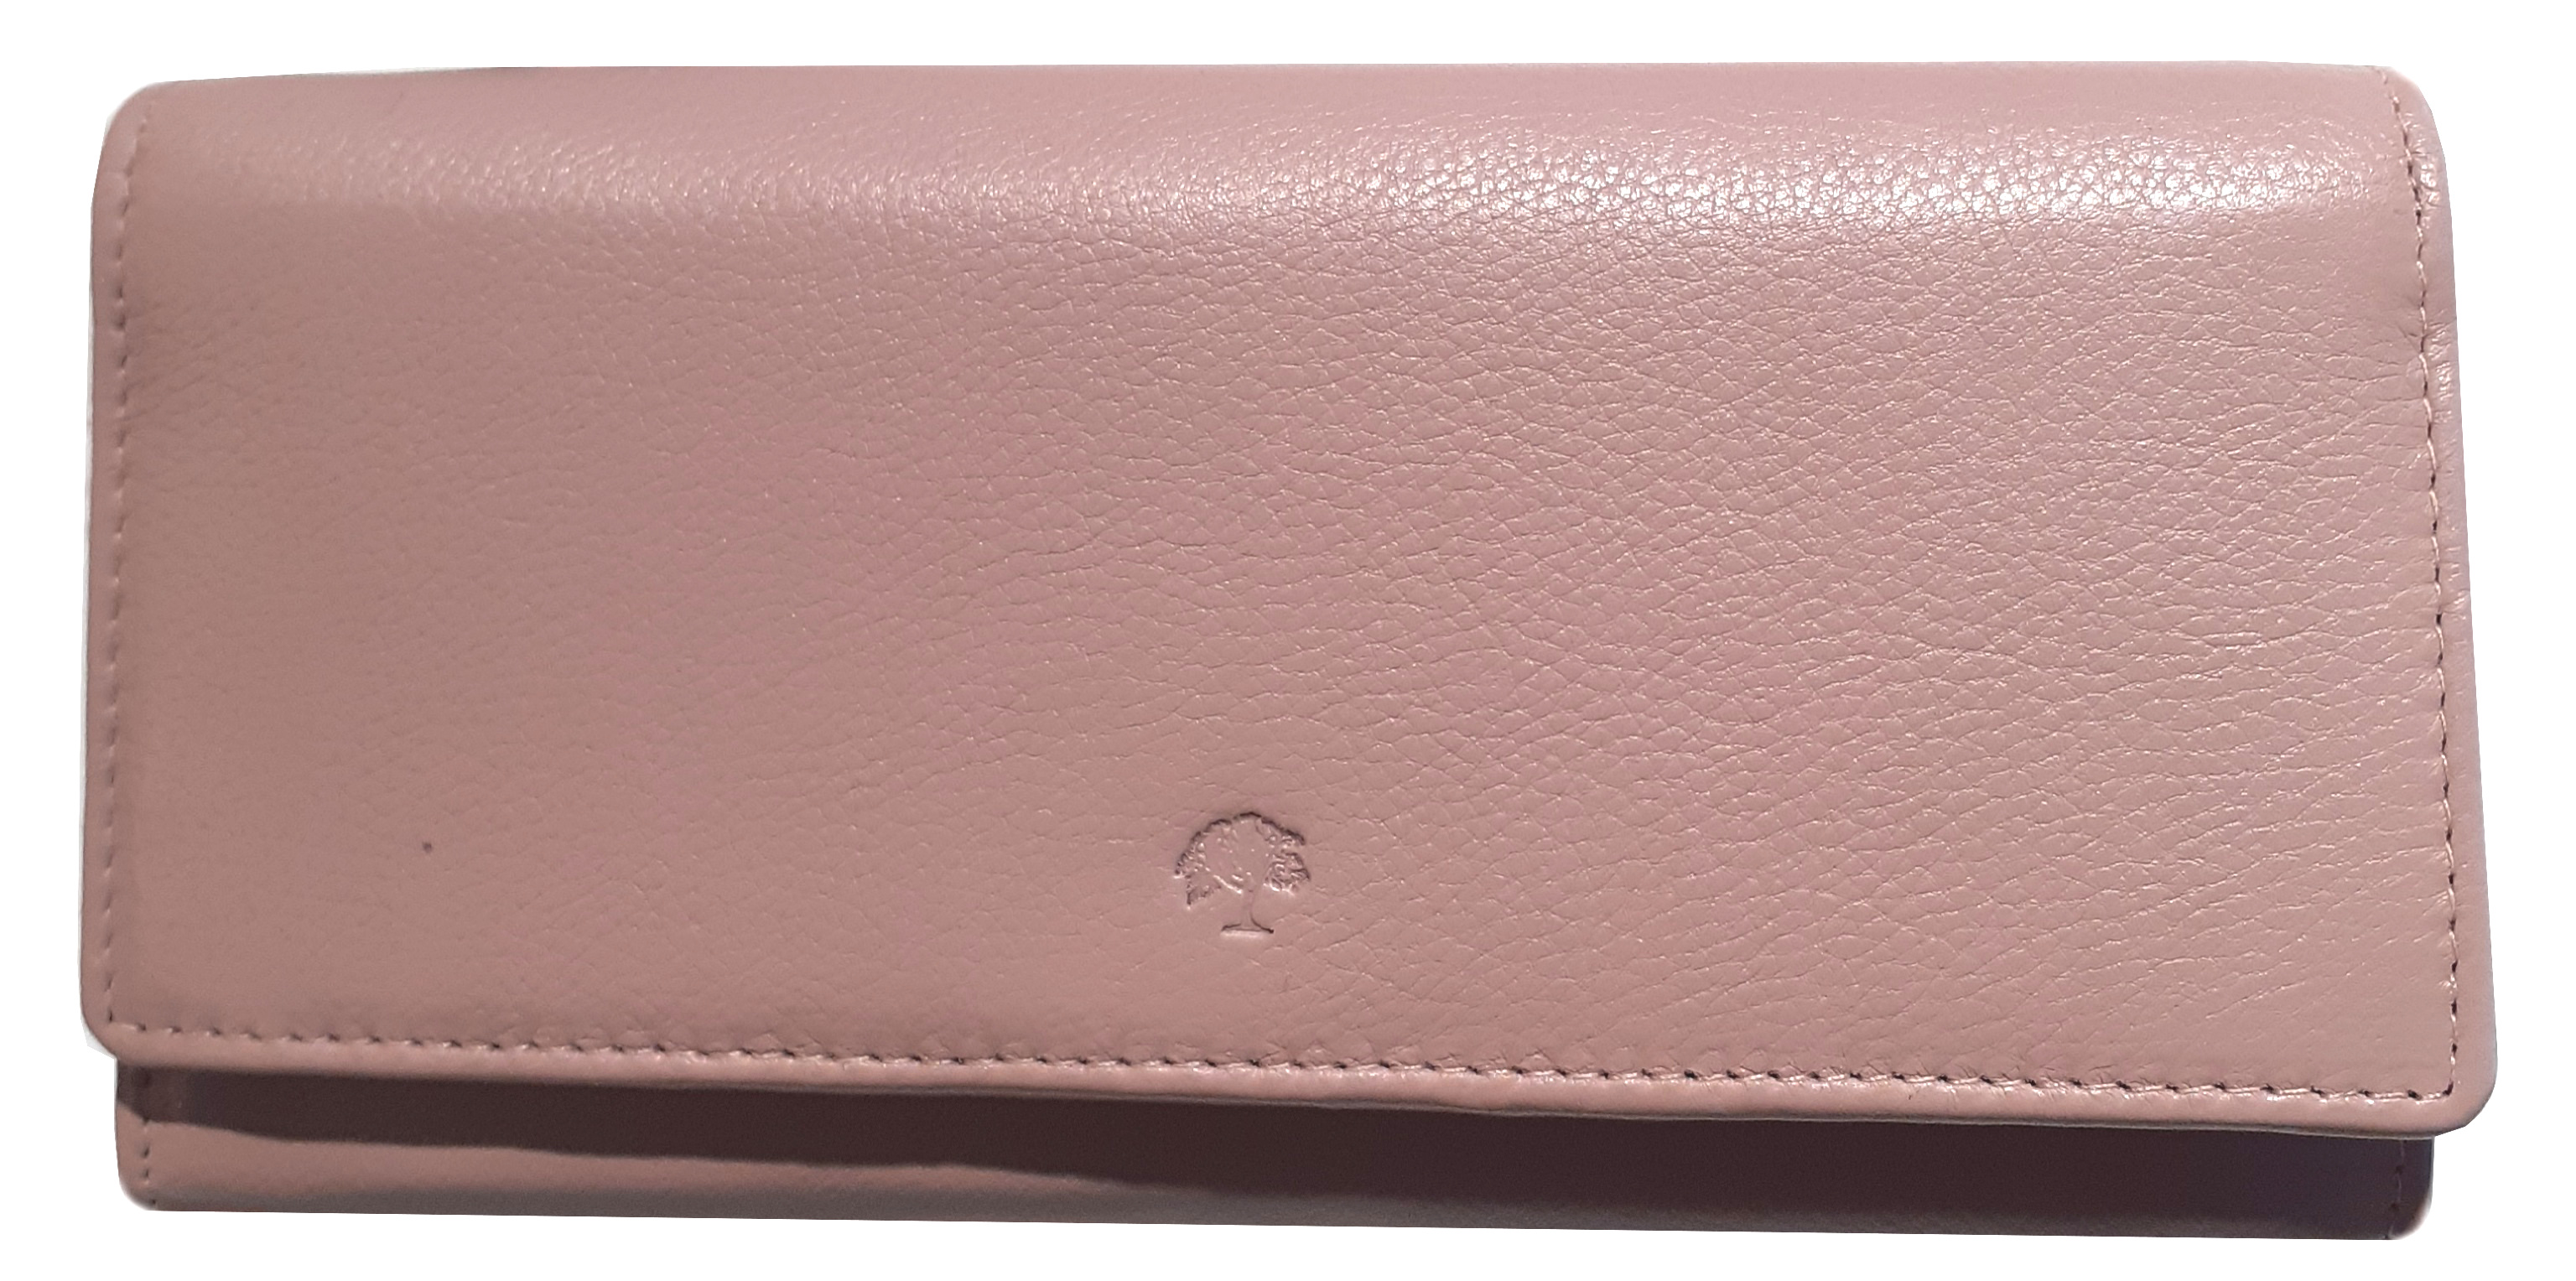 Prato 'LM Shahid' Überschlagbörse RFID-Schutz echt Leder rosa